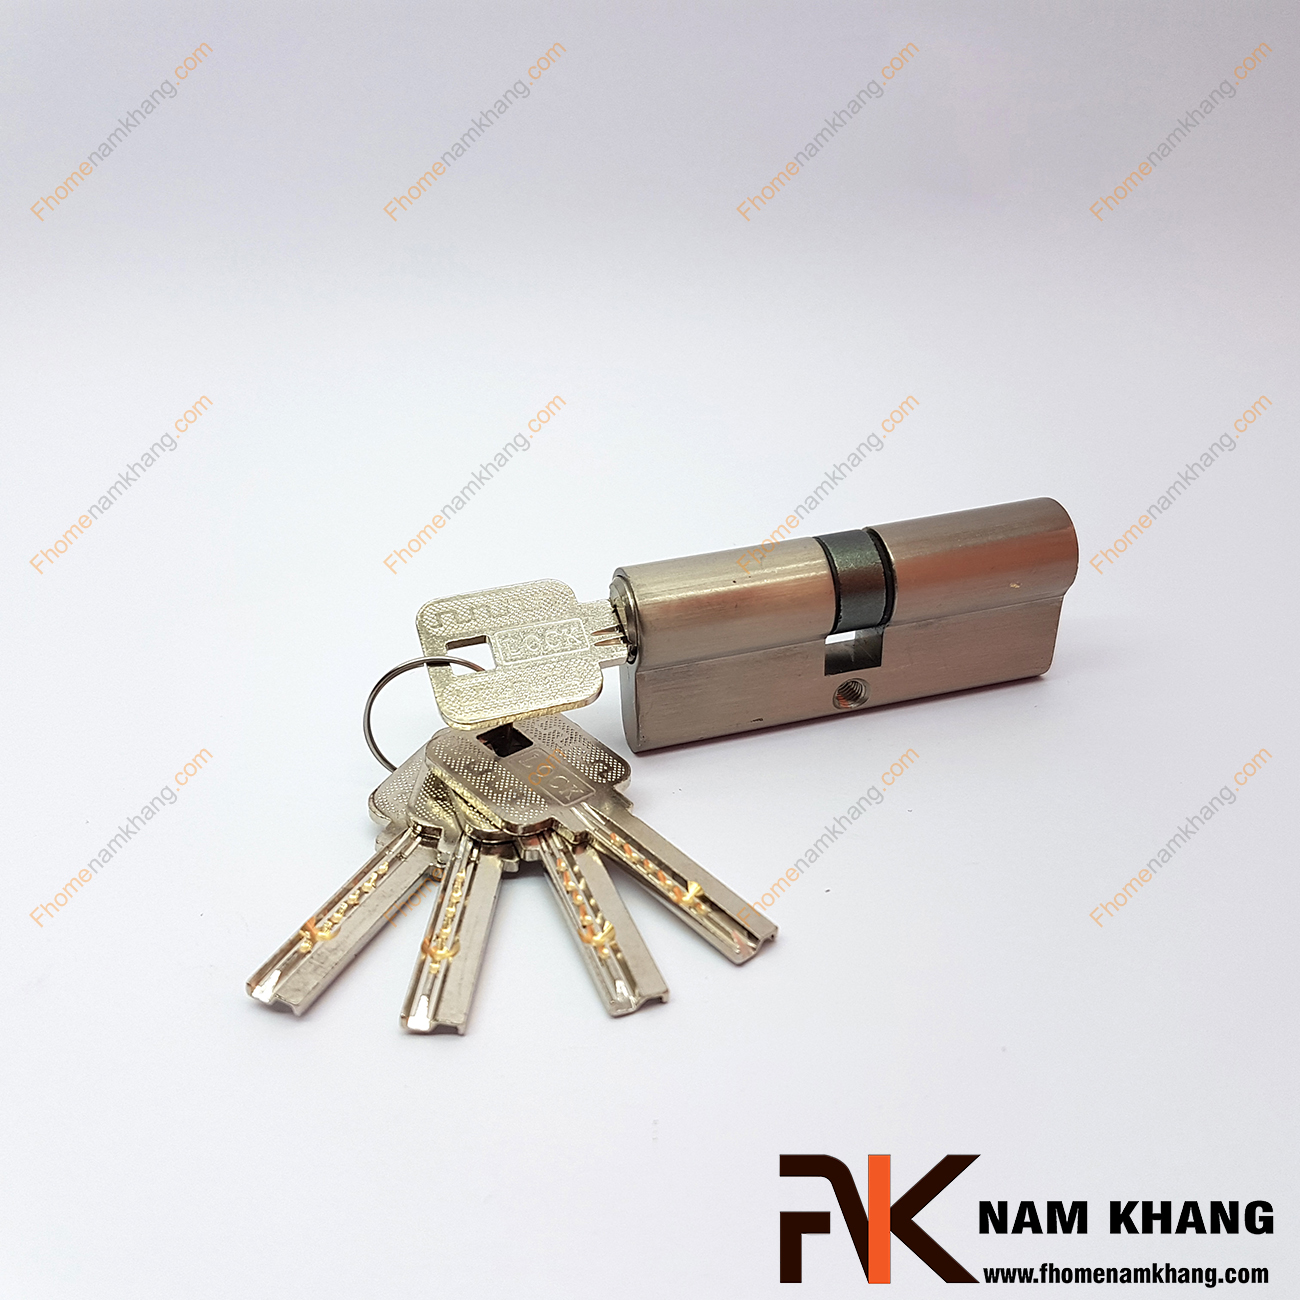 Củ khóa cửa NK261 là bộ củ khóa riêng lẻ thường được lắp đặt vào các bộ khóa cửa chính với hai đầu khóa. Sản phẩm có độ bền rất cao và độ bảo mật tốt, dễ dàng lắp đặt và sử dụng.